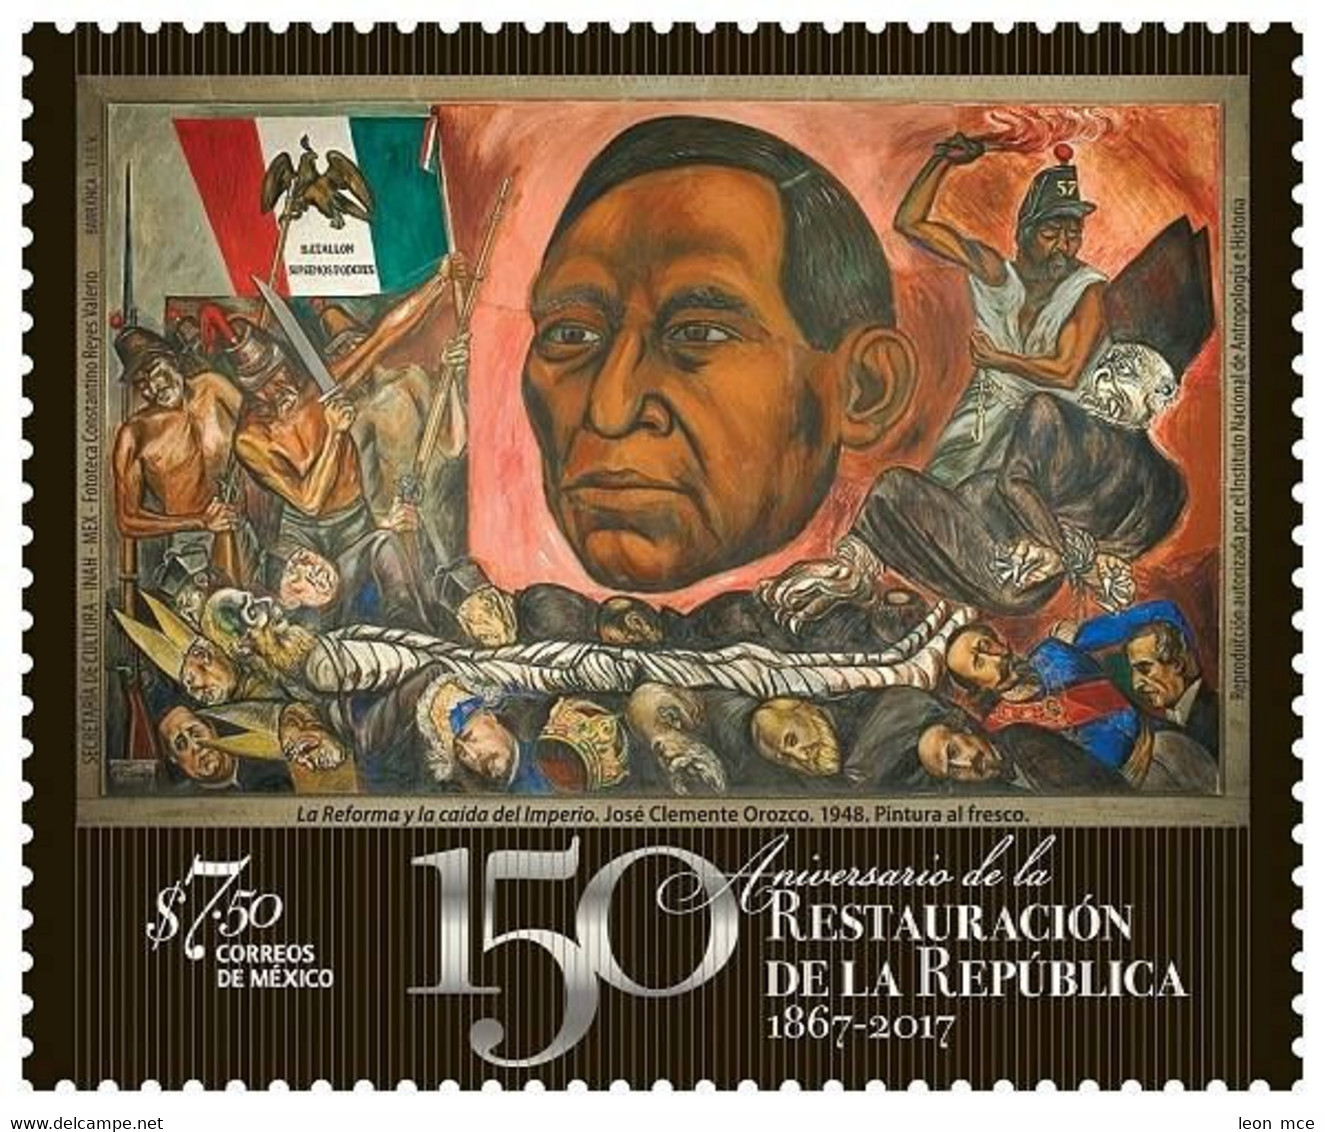 2017 MÉXICO 150 Aniversario De La Restauración De La República, MNH BENITO JUAREZ, RESTORATION OF THE REPUBLIC, MURAL - Messico